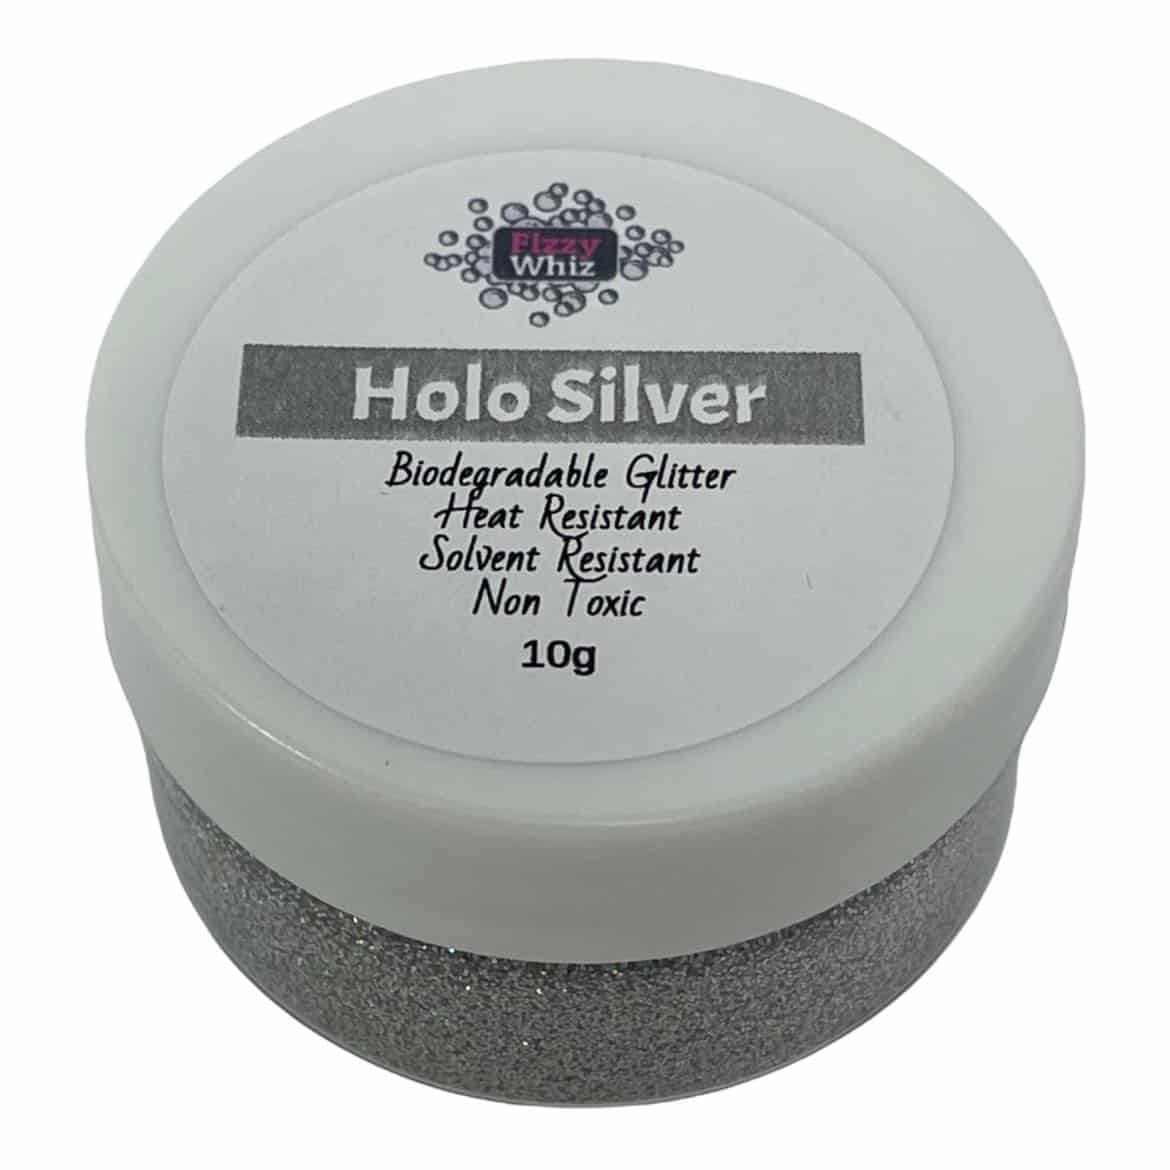 Biodegradable Holo Silver Glitter